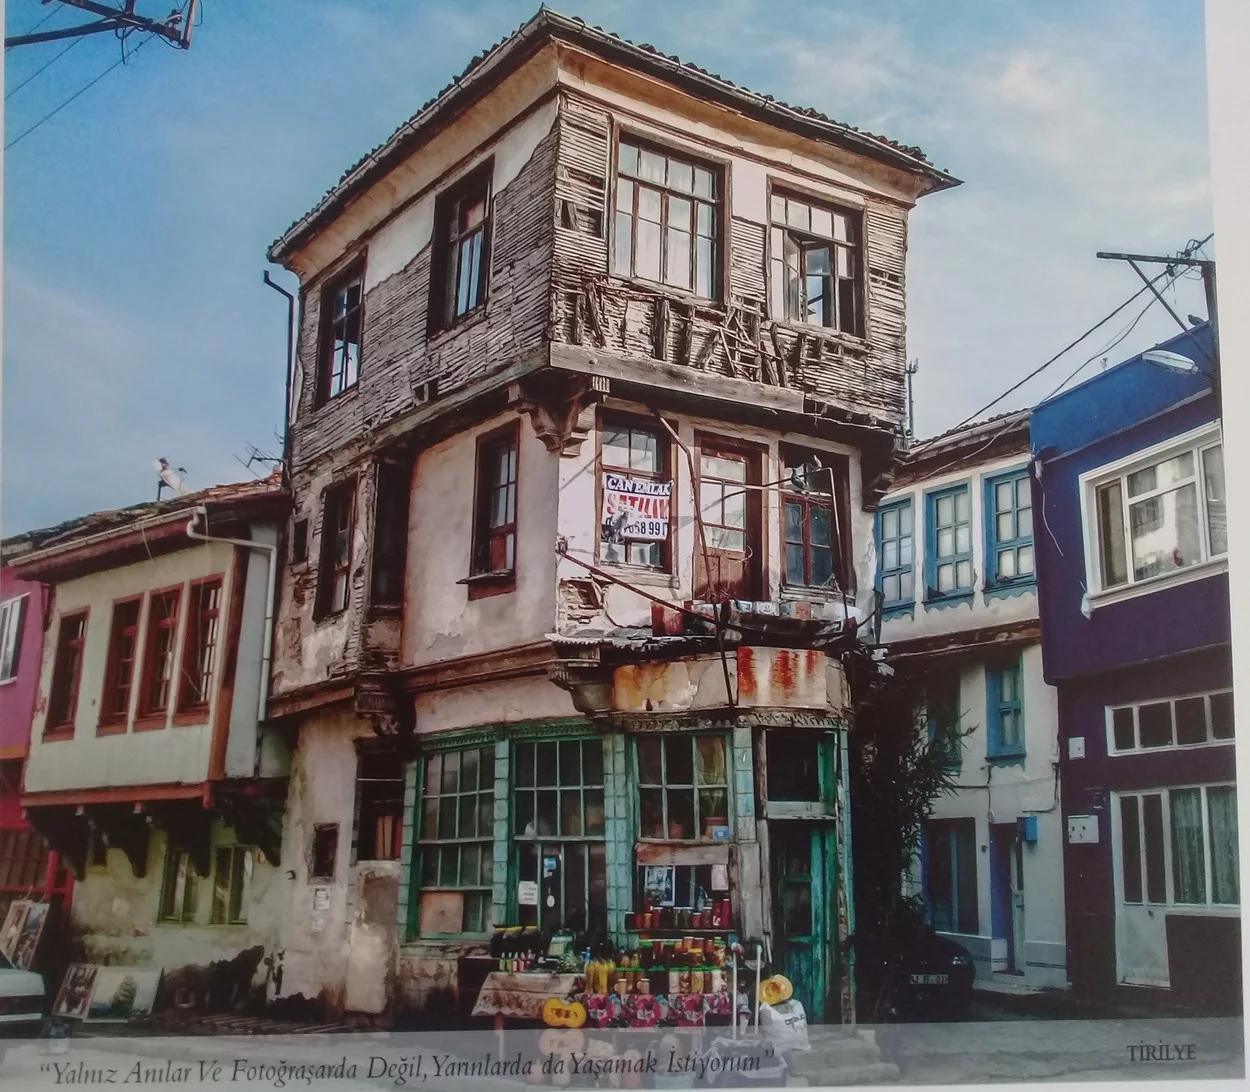 Mudanya’nın tarihî evleri fotoğraf karelerinde